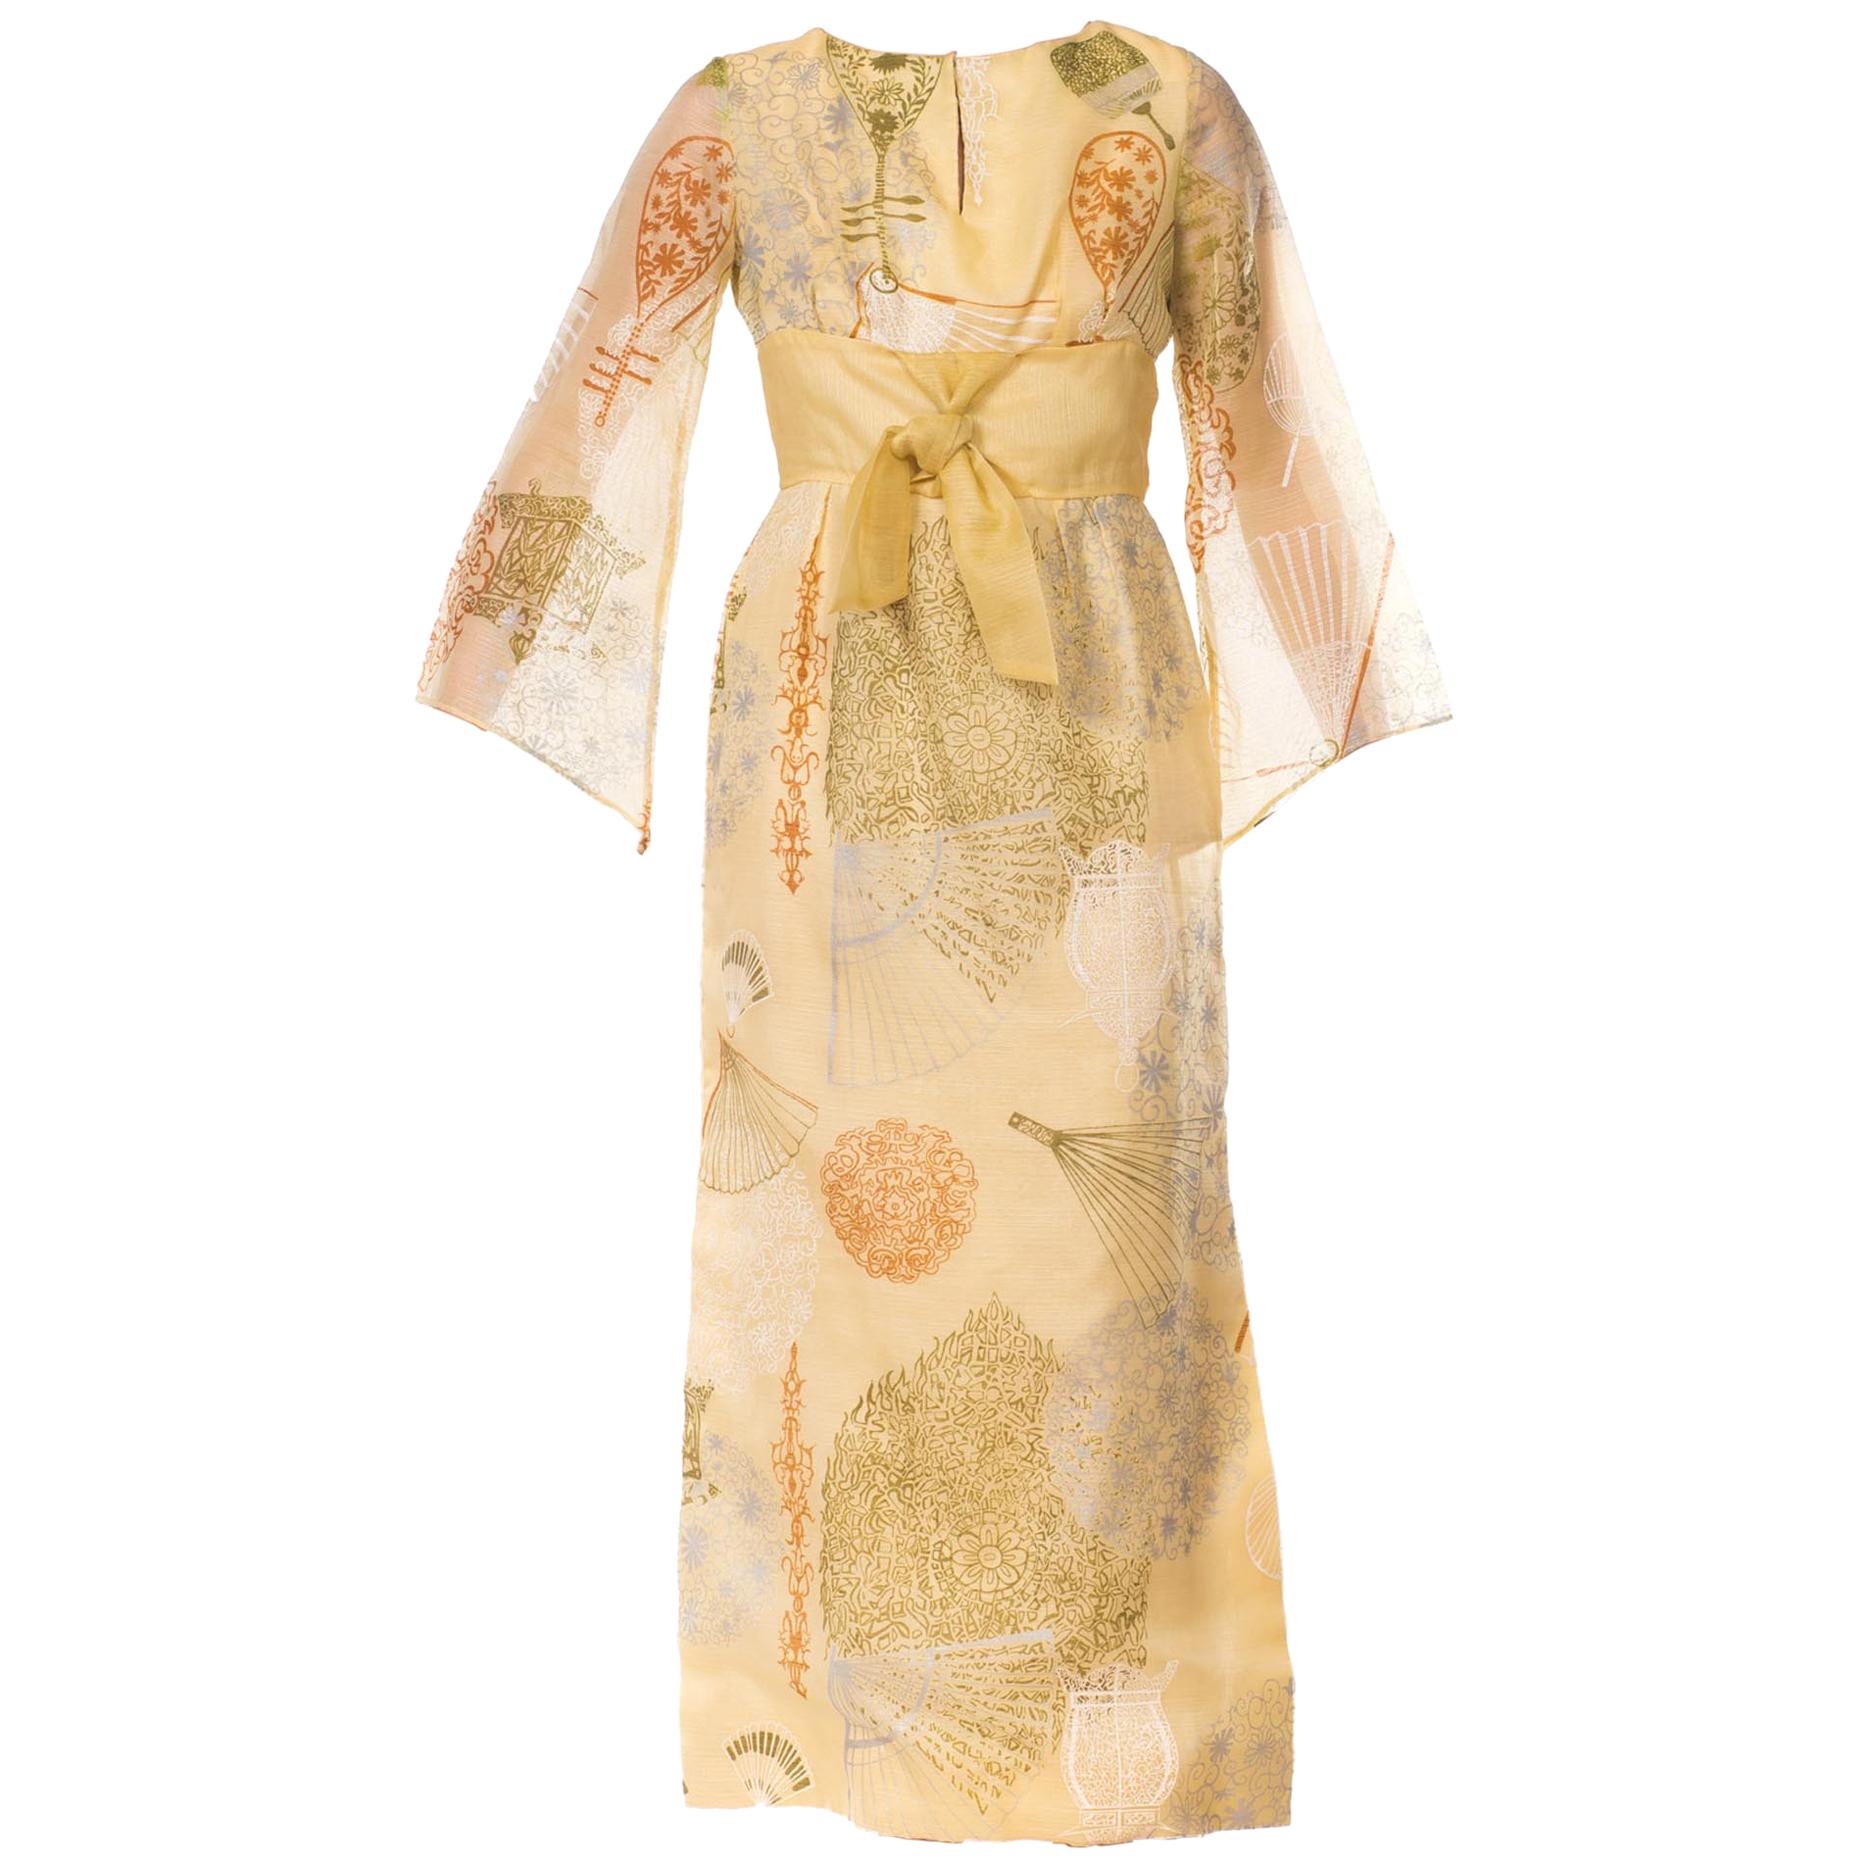 1970S ALFRED SHAHEEN Yellow Asian Fan Printed Hawaiian Dress